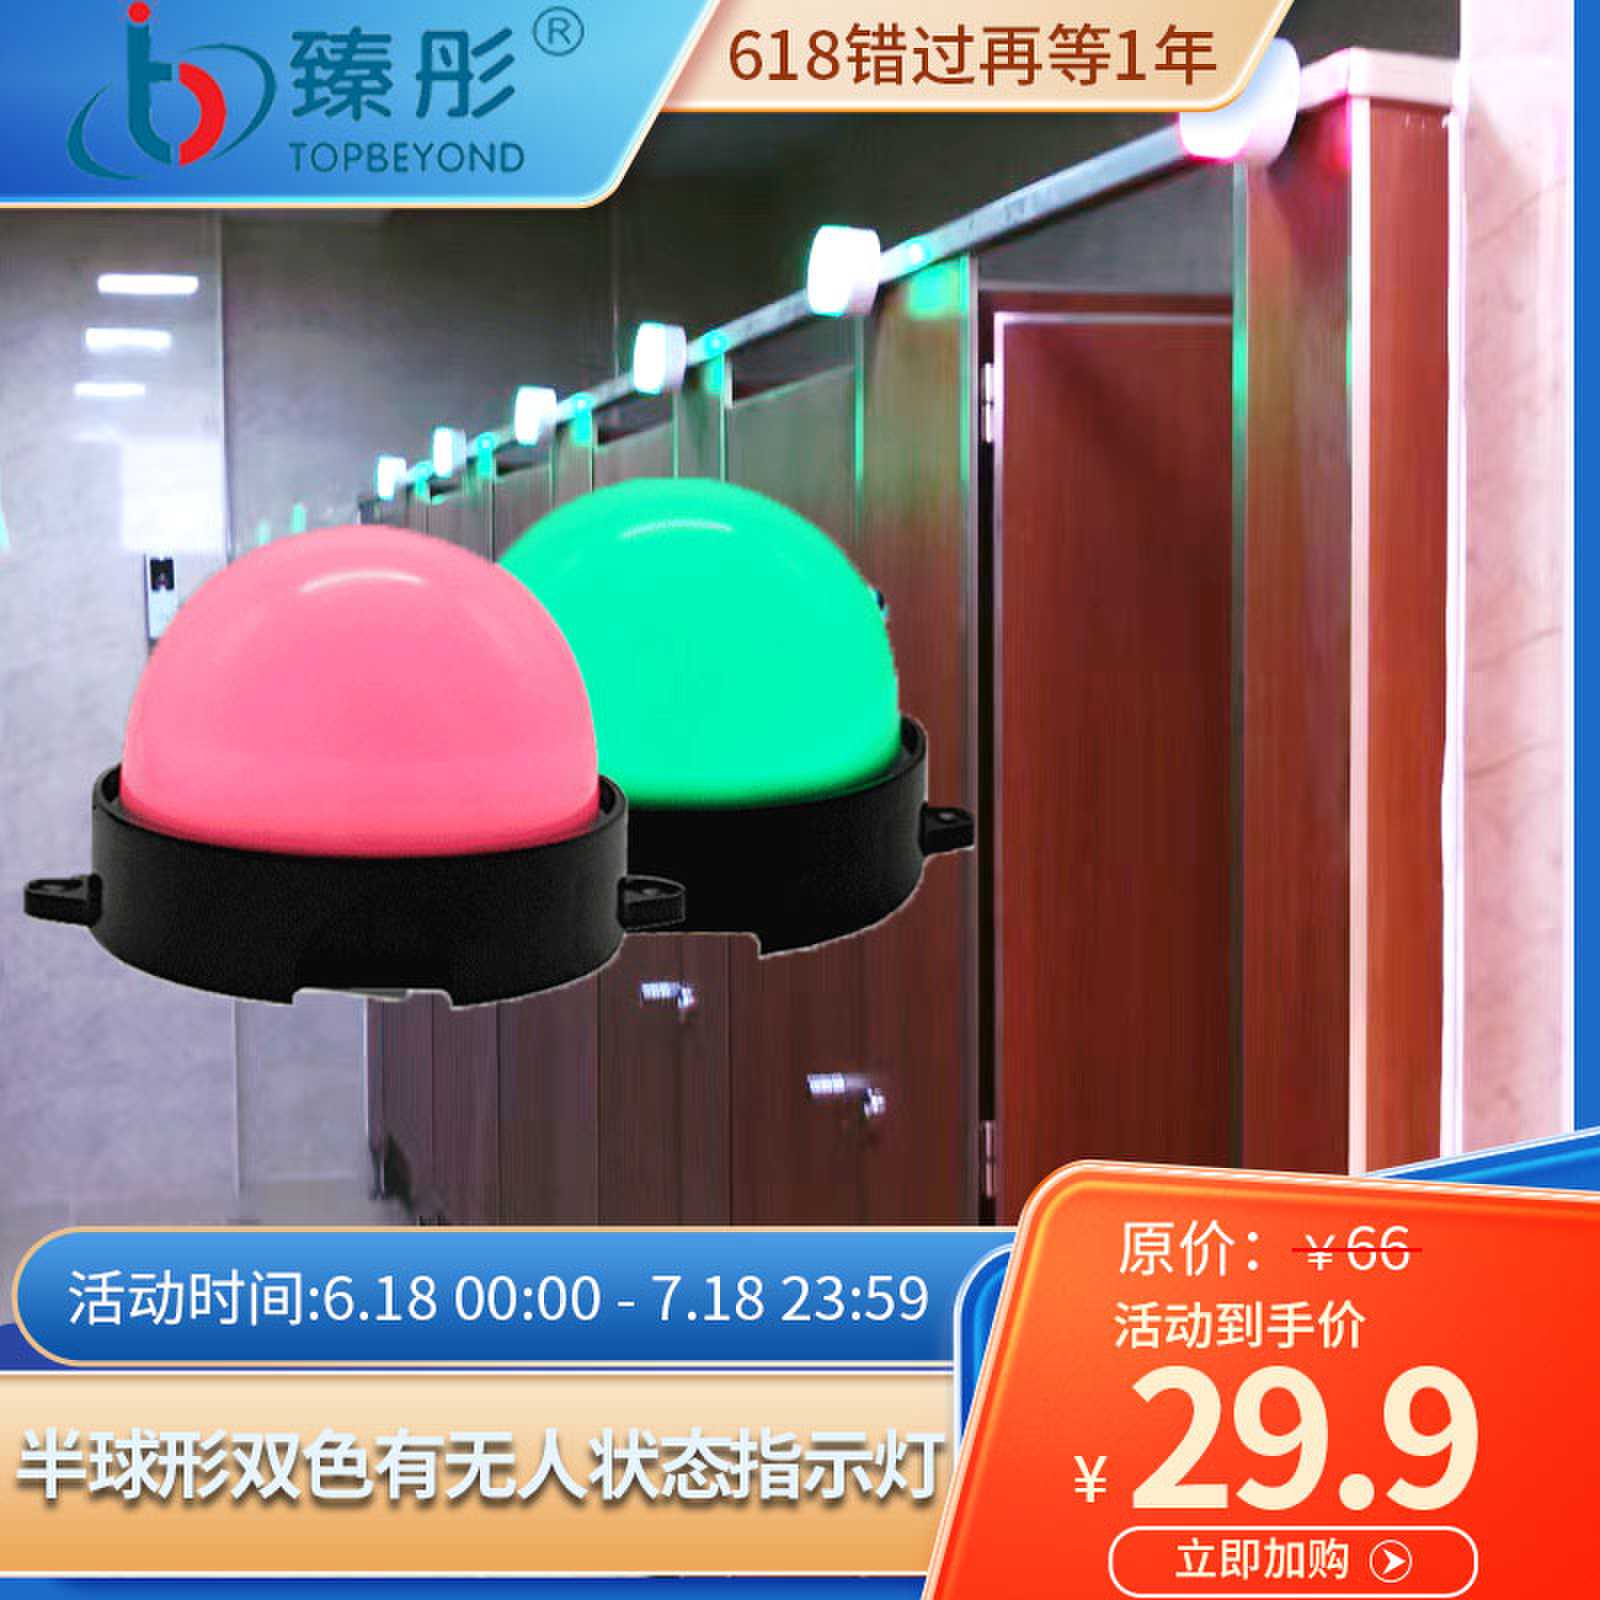 智慧厕所系统半球形LED指示灯智能引导系统蹲位感应有人无人状态图片